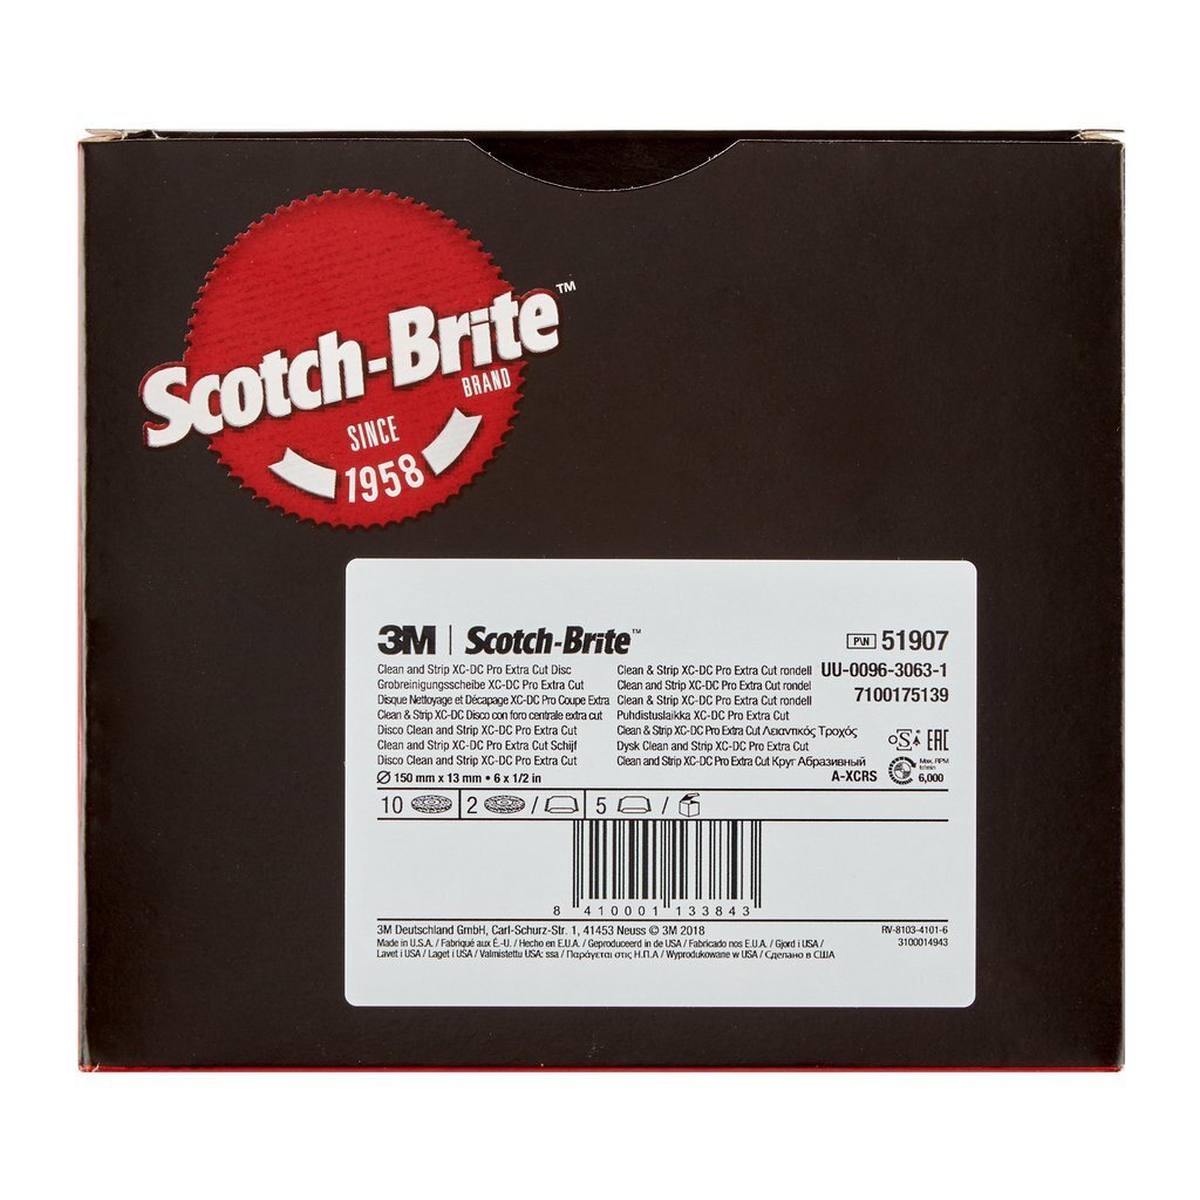 3M Scotch-Brite disco per pulizia grossolana XT-DC Pro Extra Cut, 150 mm x 13 mm, A, extra grossolano